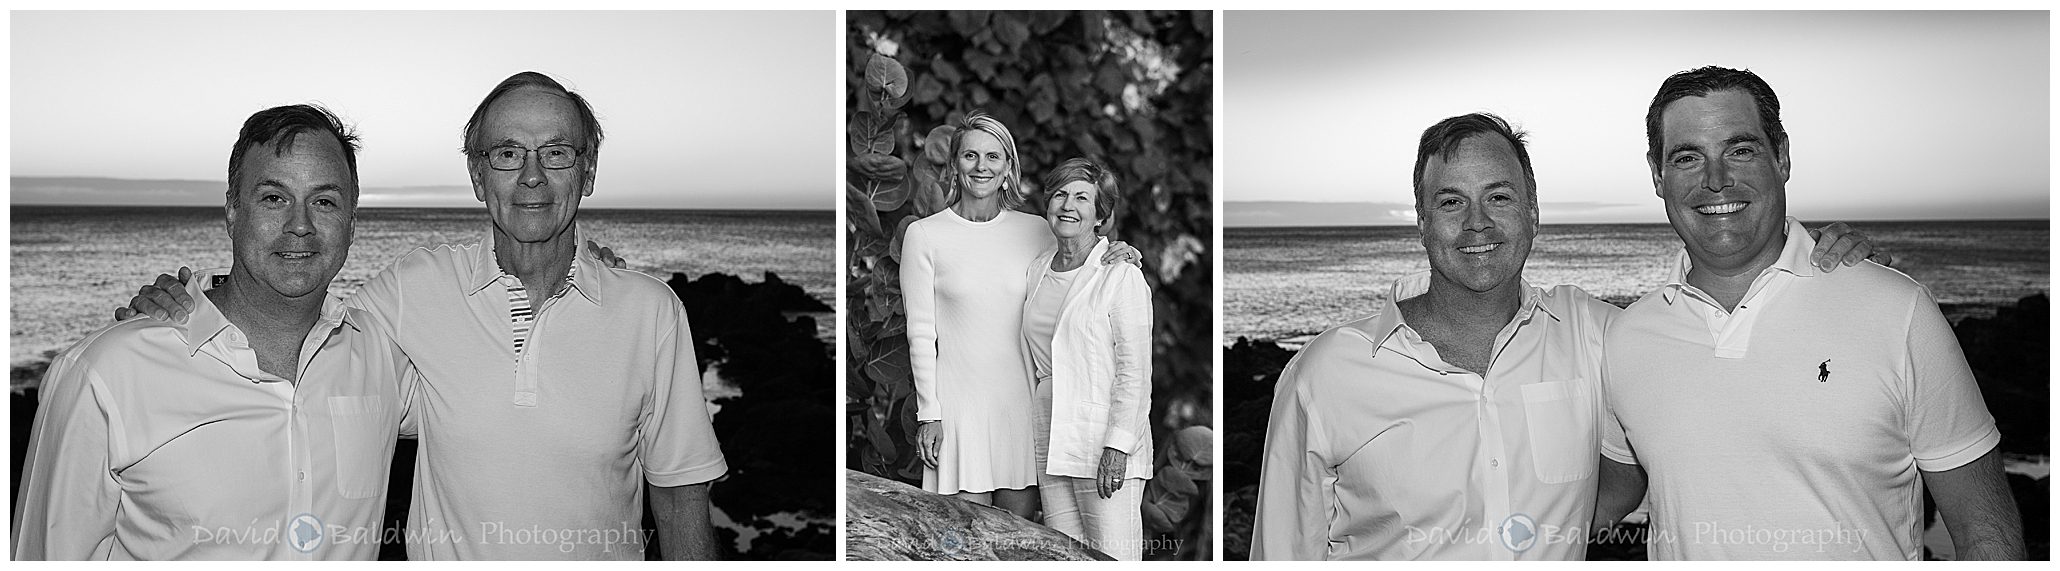 beach portraits kona hawaii,mauna kea family photos,